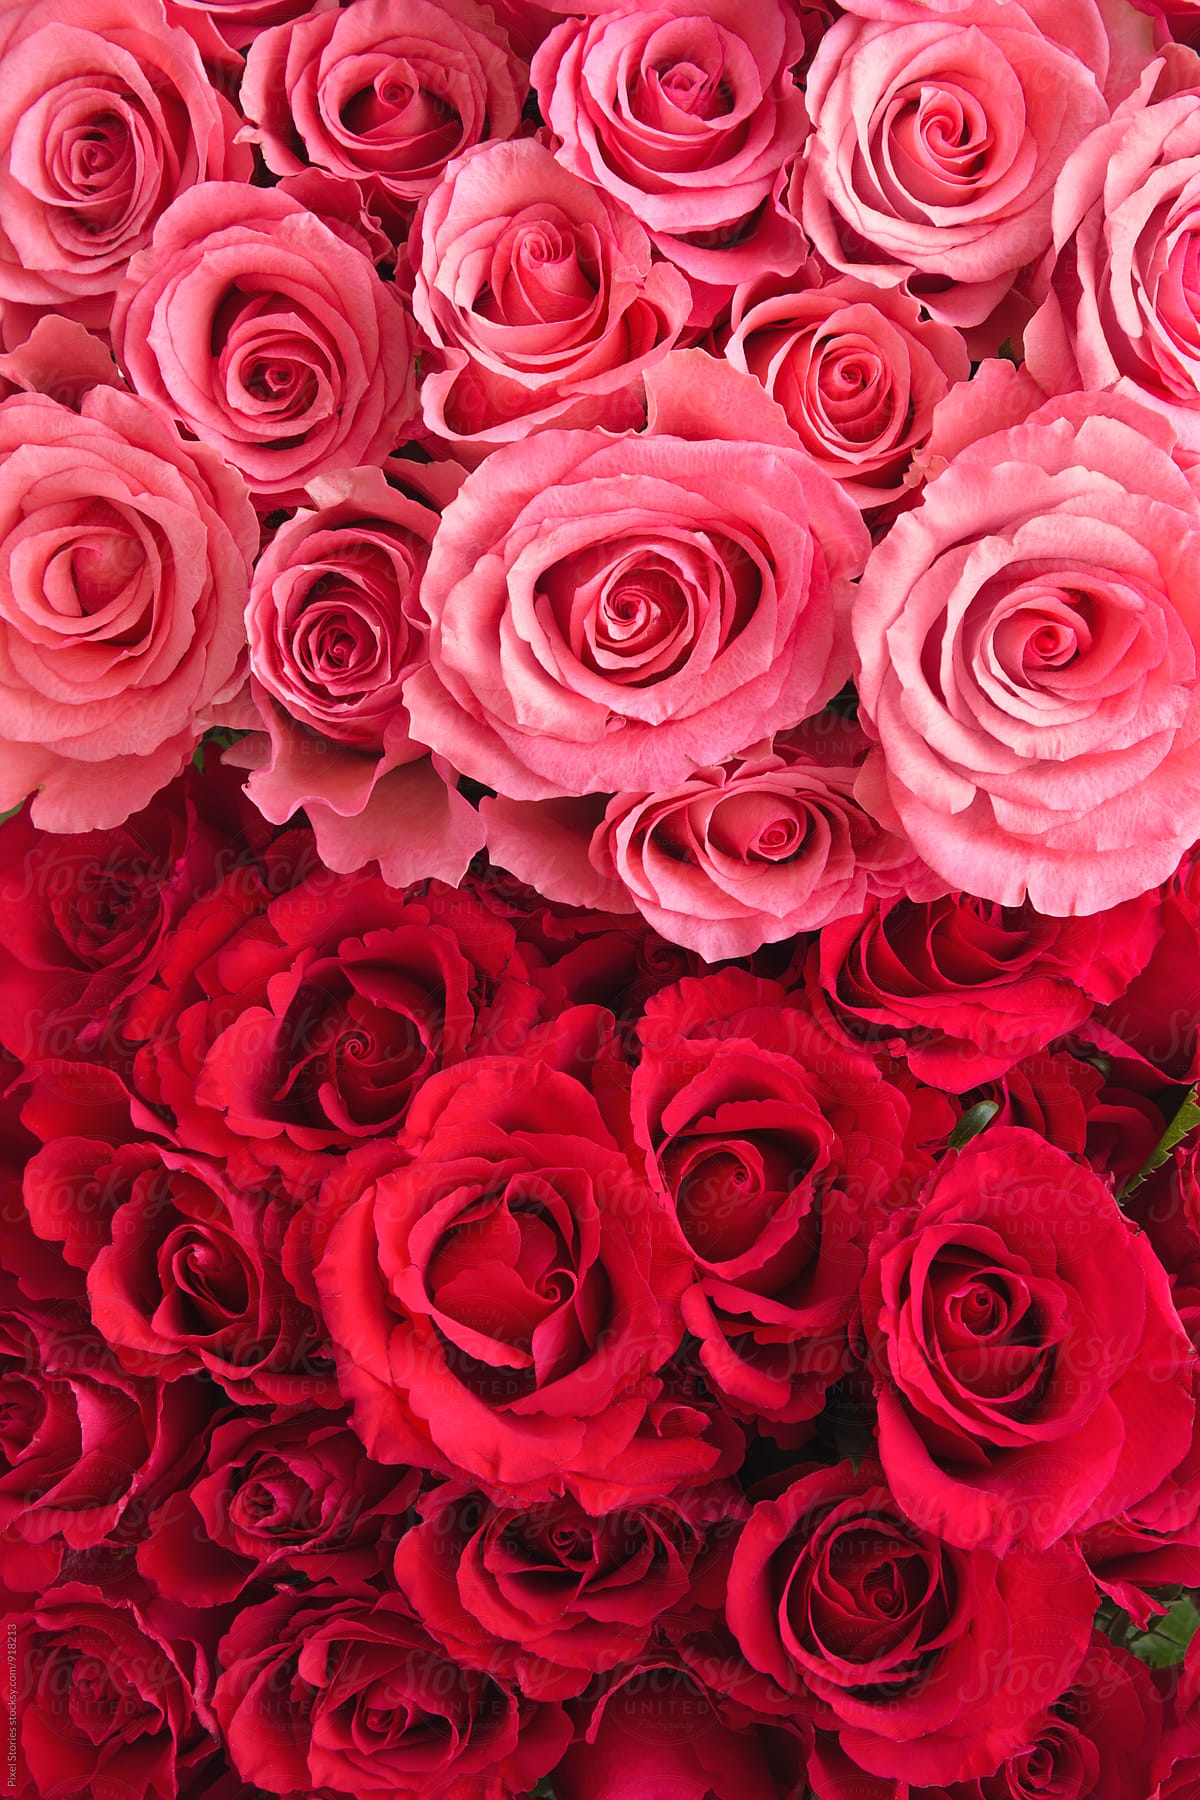 Bó hoa hồng hồng và đỏ: Bó hoa hồng hồng và đỏ này là một tác phẩm nghệ thuật đẹp mắt và đầy sức sống. Stocksy Contributor đã sáng tạo ra một bức ảnh thiếu nhiều màu sắc nhưng vô cùng tươi sáng. Hãy ngắm nhìn bó hoa tuyệt đẹp này để cảm nhận được sự tràn đầy sinh lực.